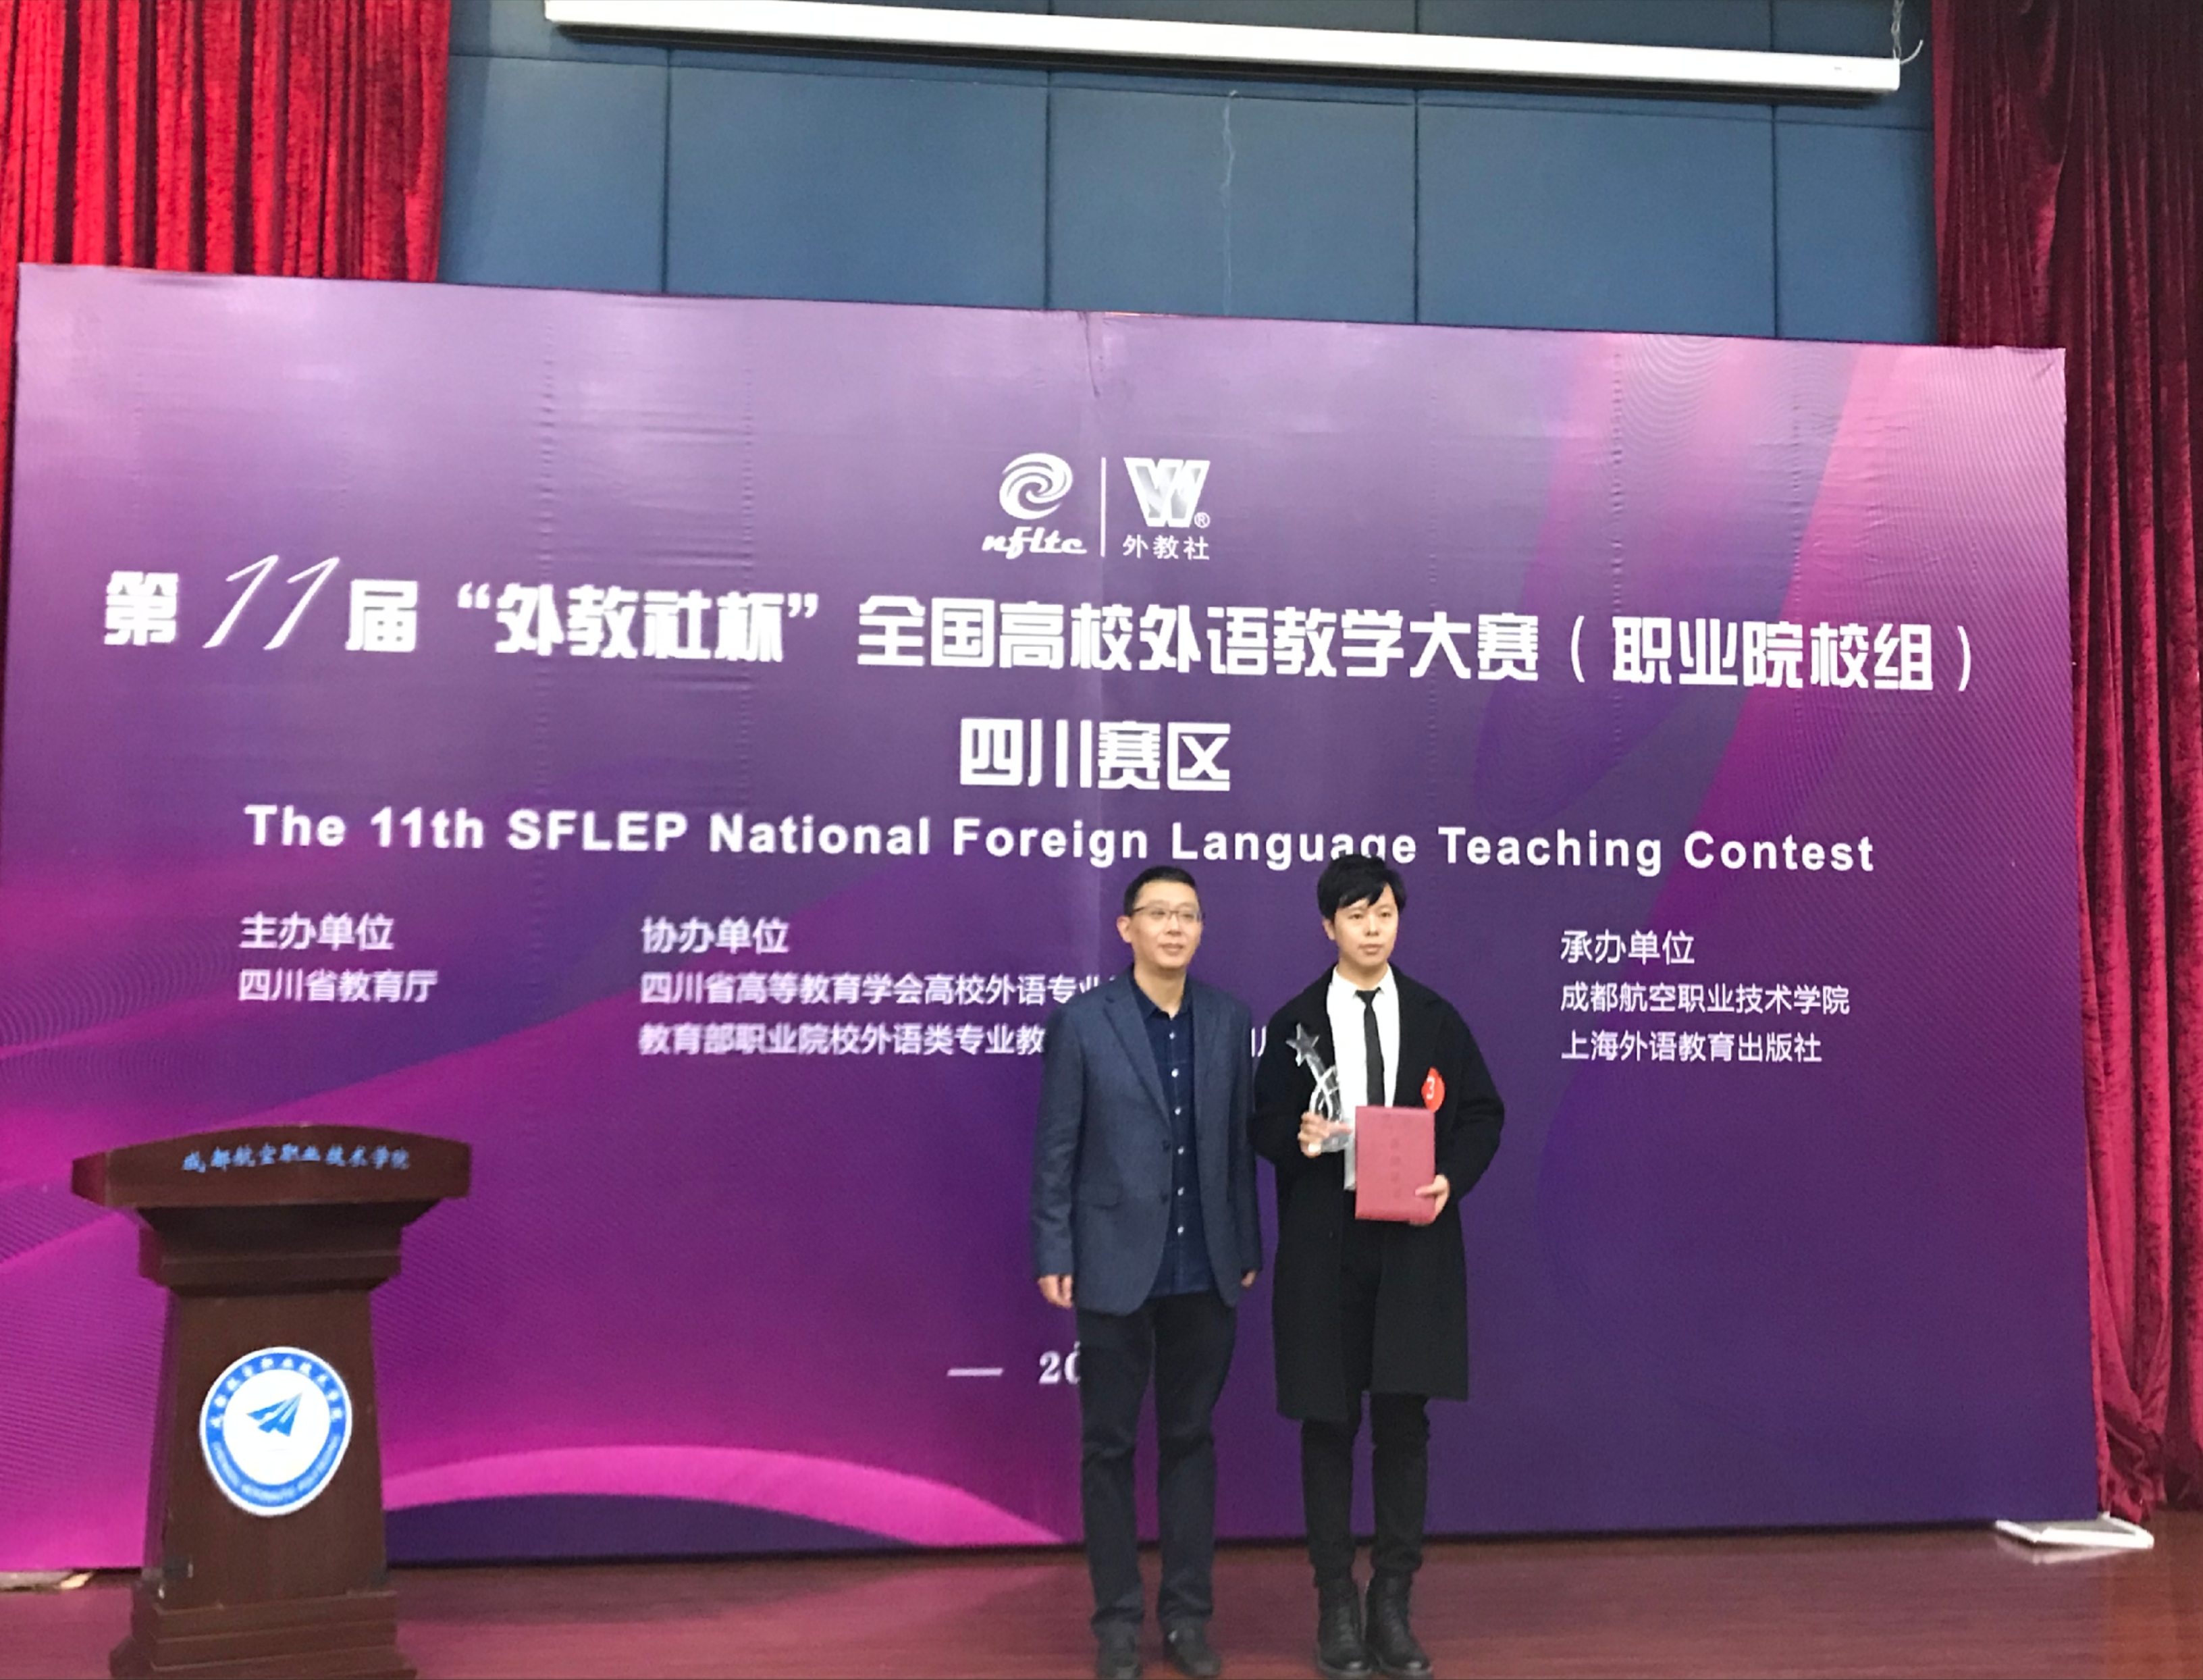 我校教师胡洋获得第十一届“外教社杯”全国高校外语教学大赛四川赛区特等奖